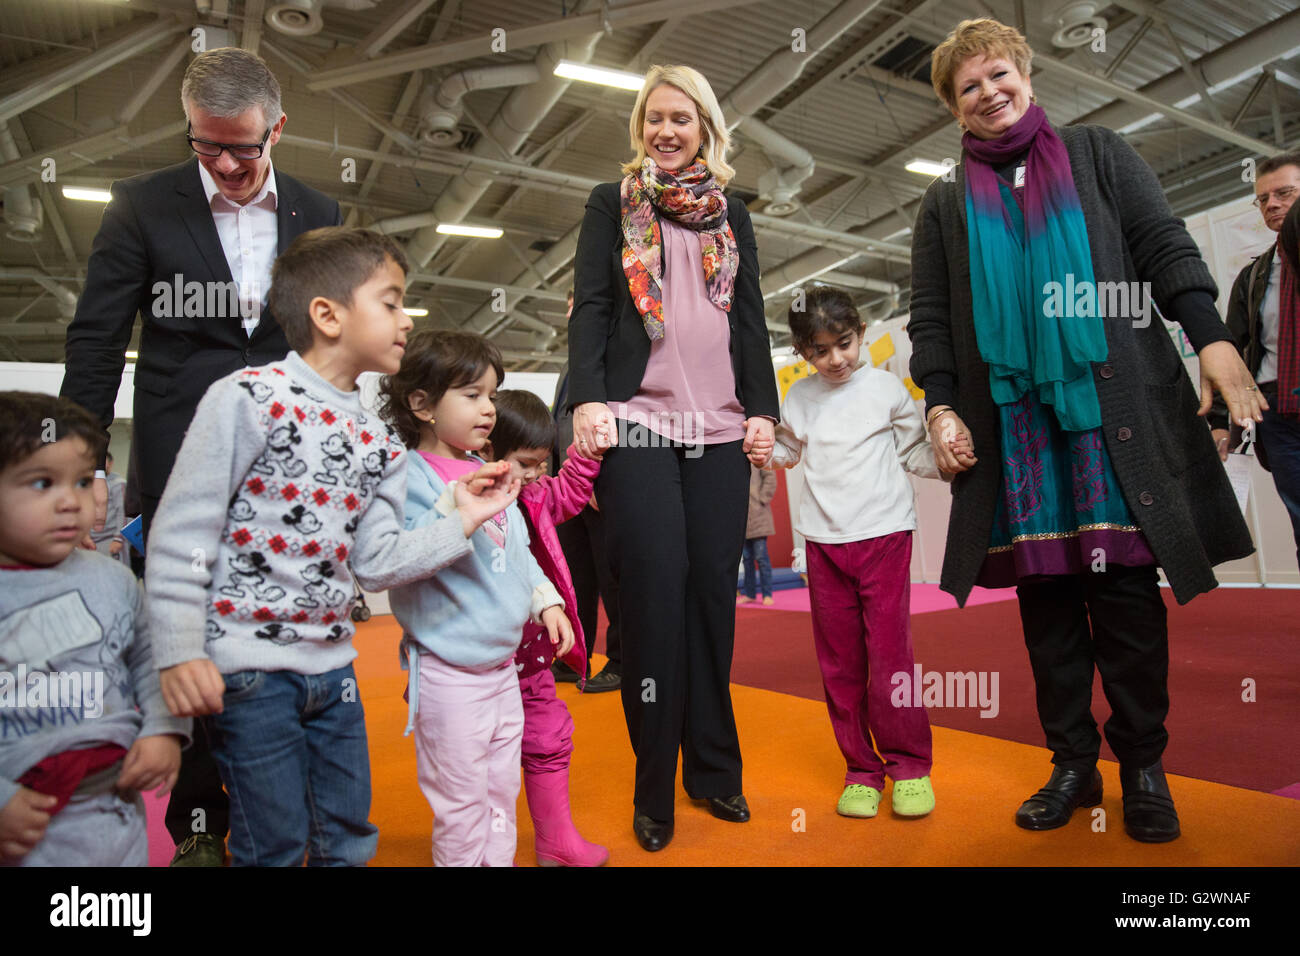 08.12.2015, Berlin, Berlin, Germania - Ministro della famiglia Manuela Schwesig (SPD) visitata presso il centro congressi di un ricovero per i rifugiati. In gestito da Malteser proprietà, circa 1.000 rifugiati registrati sono alloggiati, la maggior parte delle loro famiglie. Qui quando si visita la custodia dei bambini. 0DB151208D011CAROEX.JPG - non per la vendita in G E R M A N Y, A U S T R I A, S W I T Z e R L A N D [modello di rilascio: NO, la proprietà di rilascio: NO, (c) caro agenzia fotografica / Bleicker, http://www.caro-images.com, info@carofoto.pl - Qualsiasi uso di questa immagine è soggetto a royalty!] Foto Stock